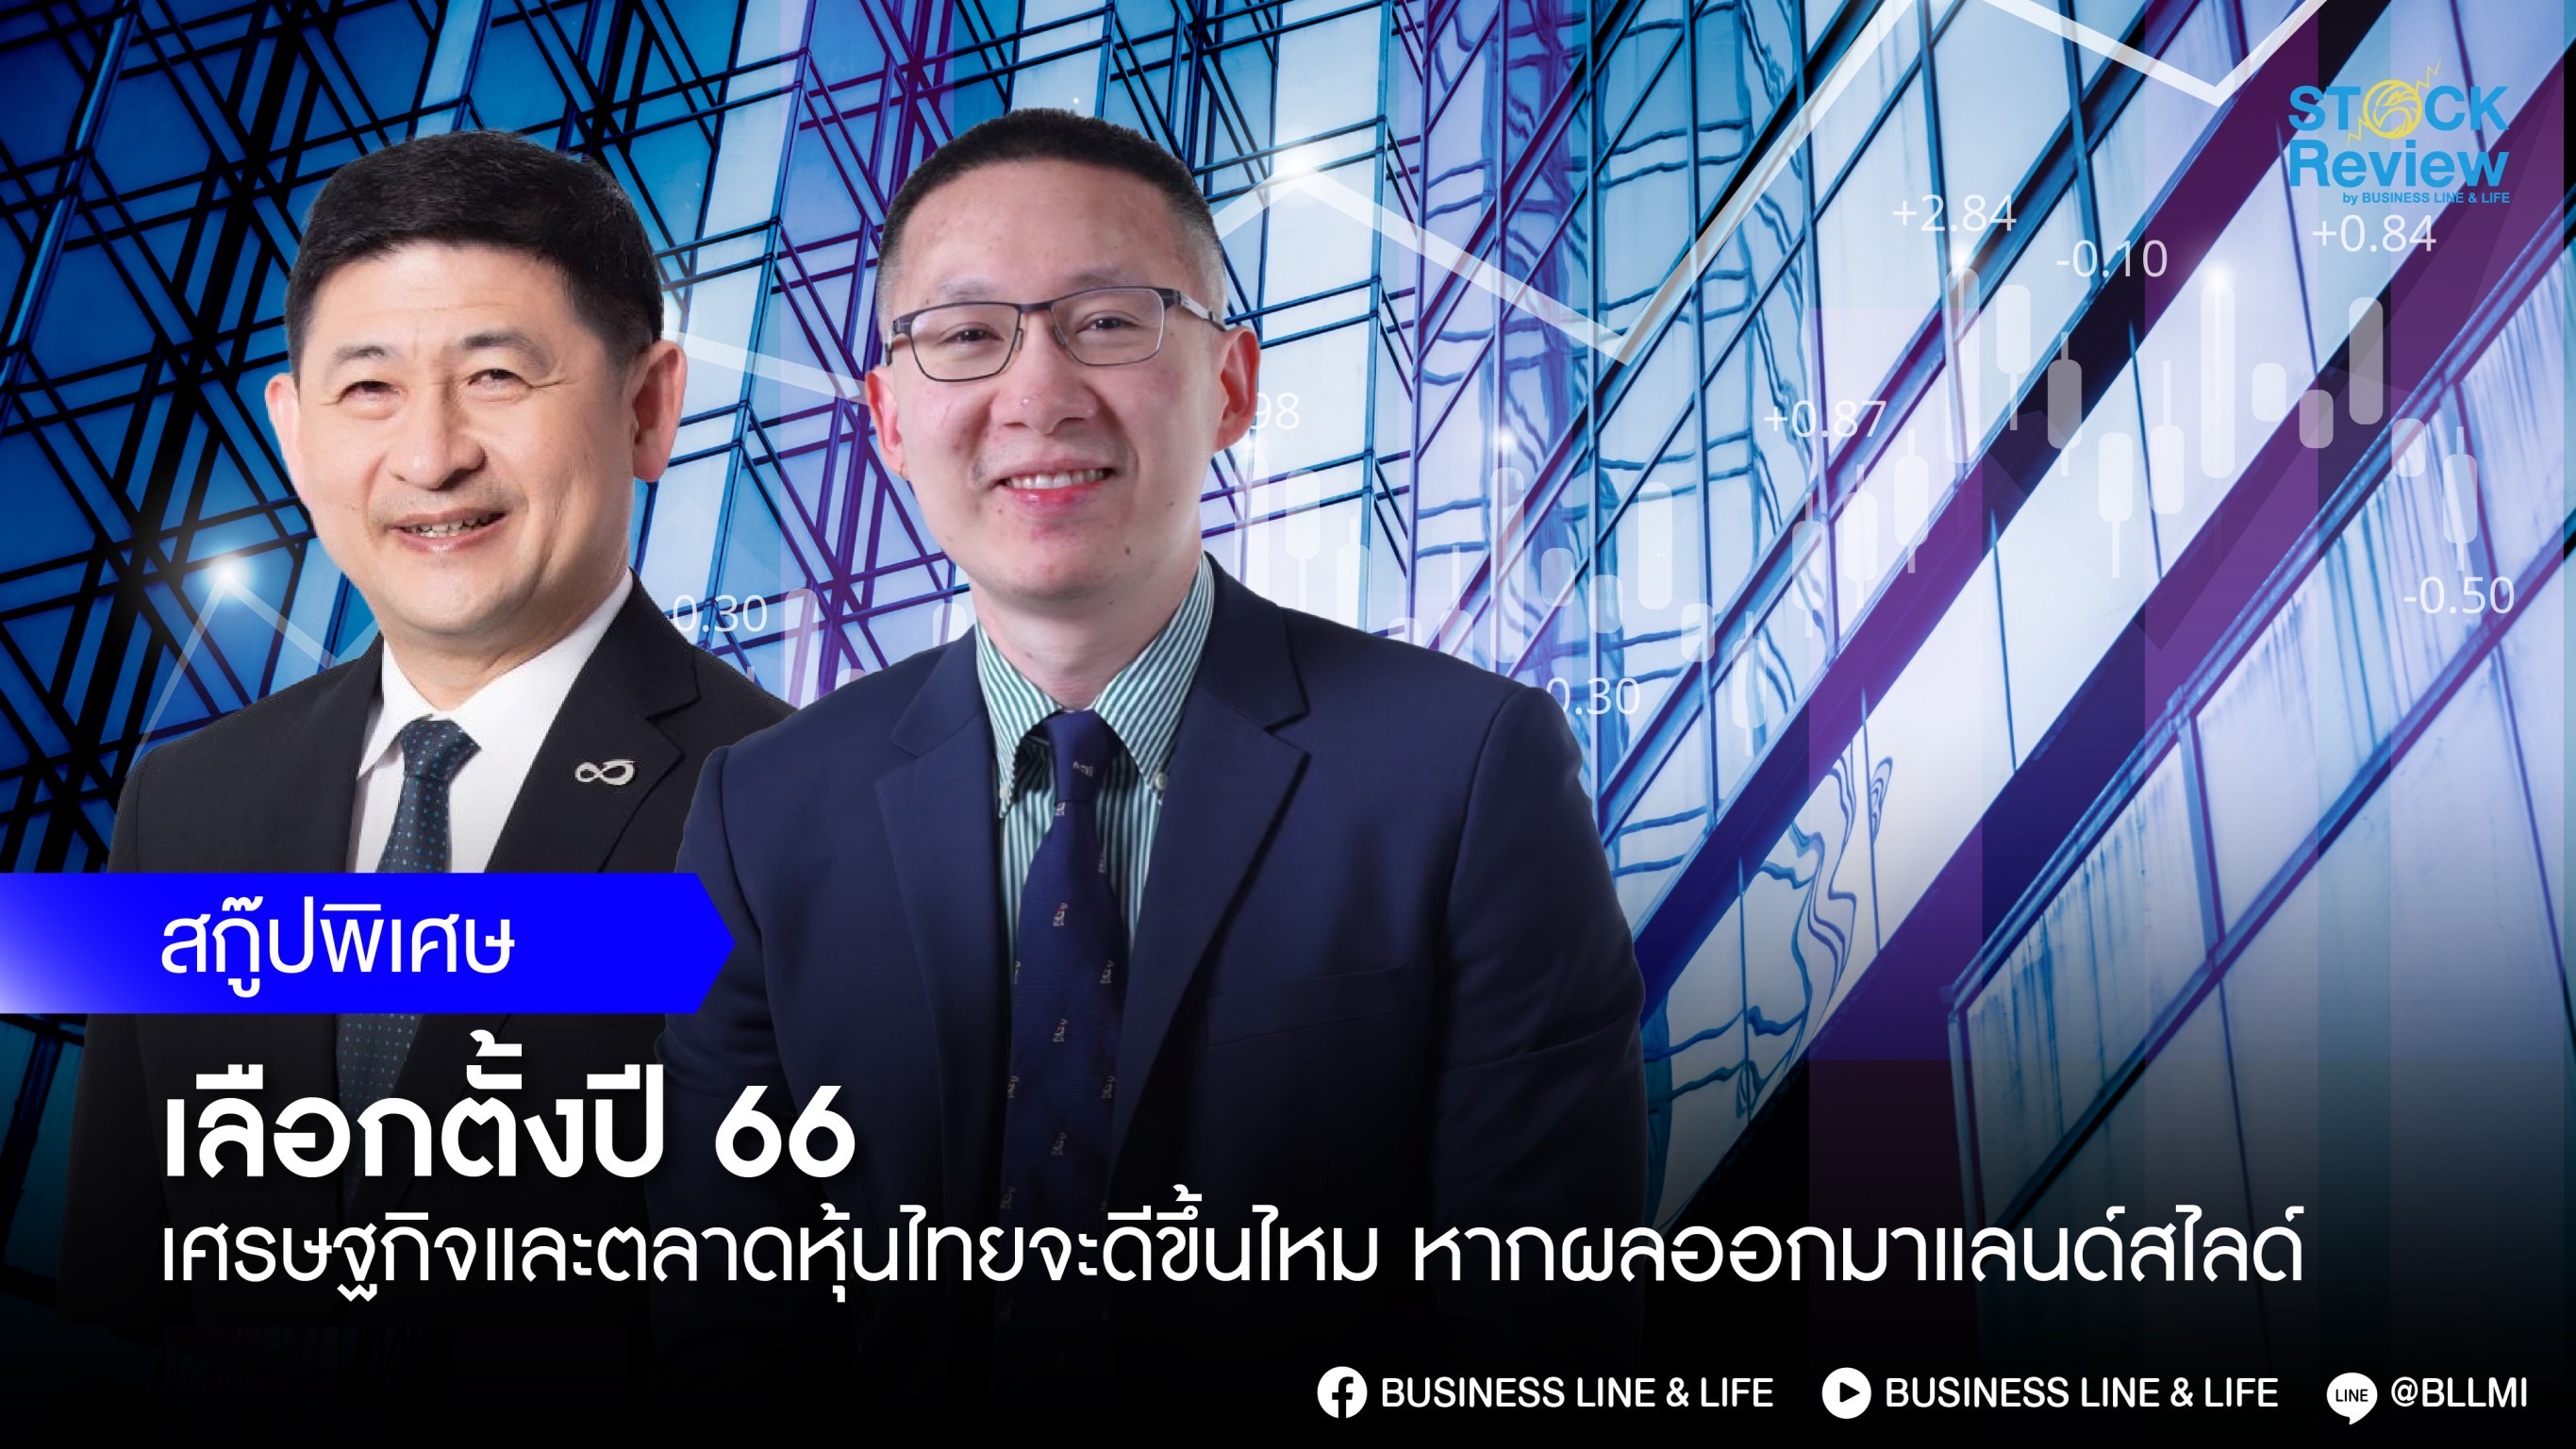 จับตาเลือกตั้งปี 66 เศรษฐกิจและตลาดหุ้นไทยจะดีขึ้นไหมหากผลออกมาแลนด์สไลด์